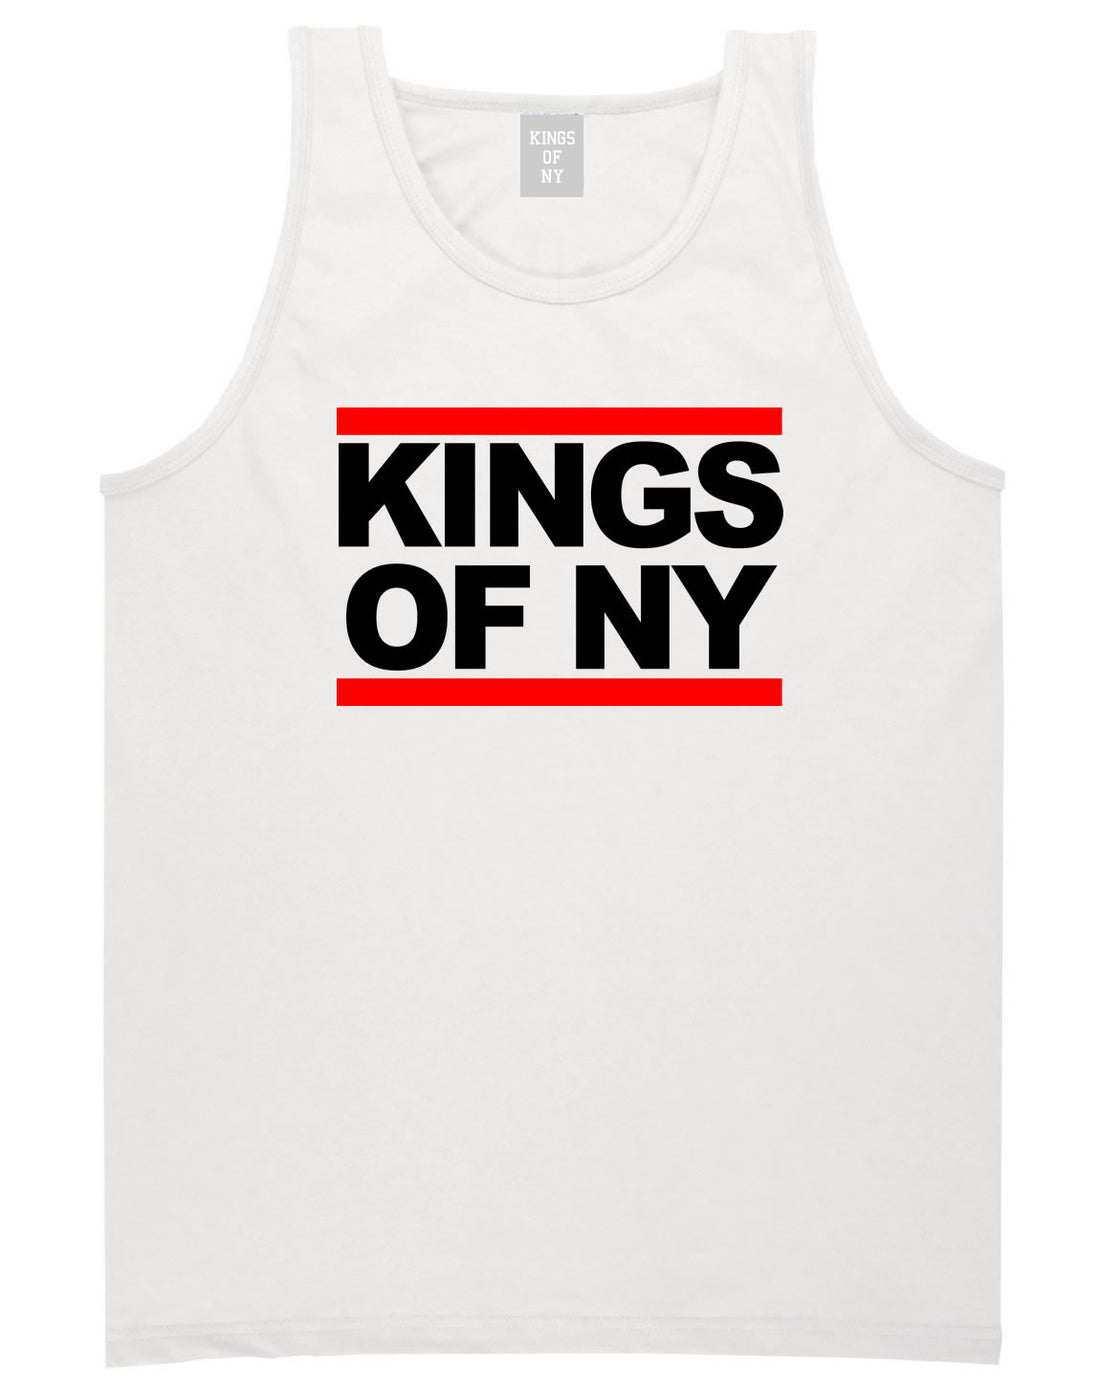 Kings Of NY Run DMC Logo Style Tank Top in White By Kings Of NY